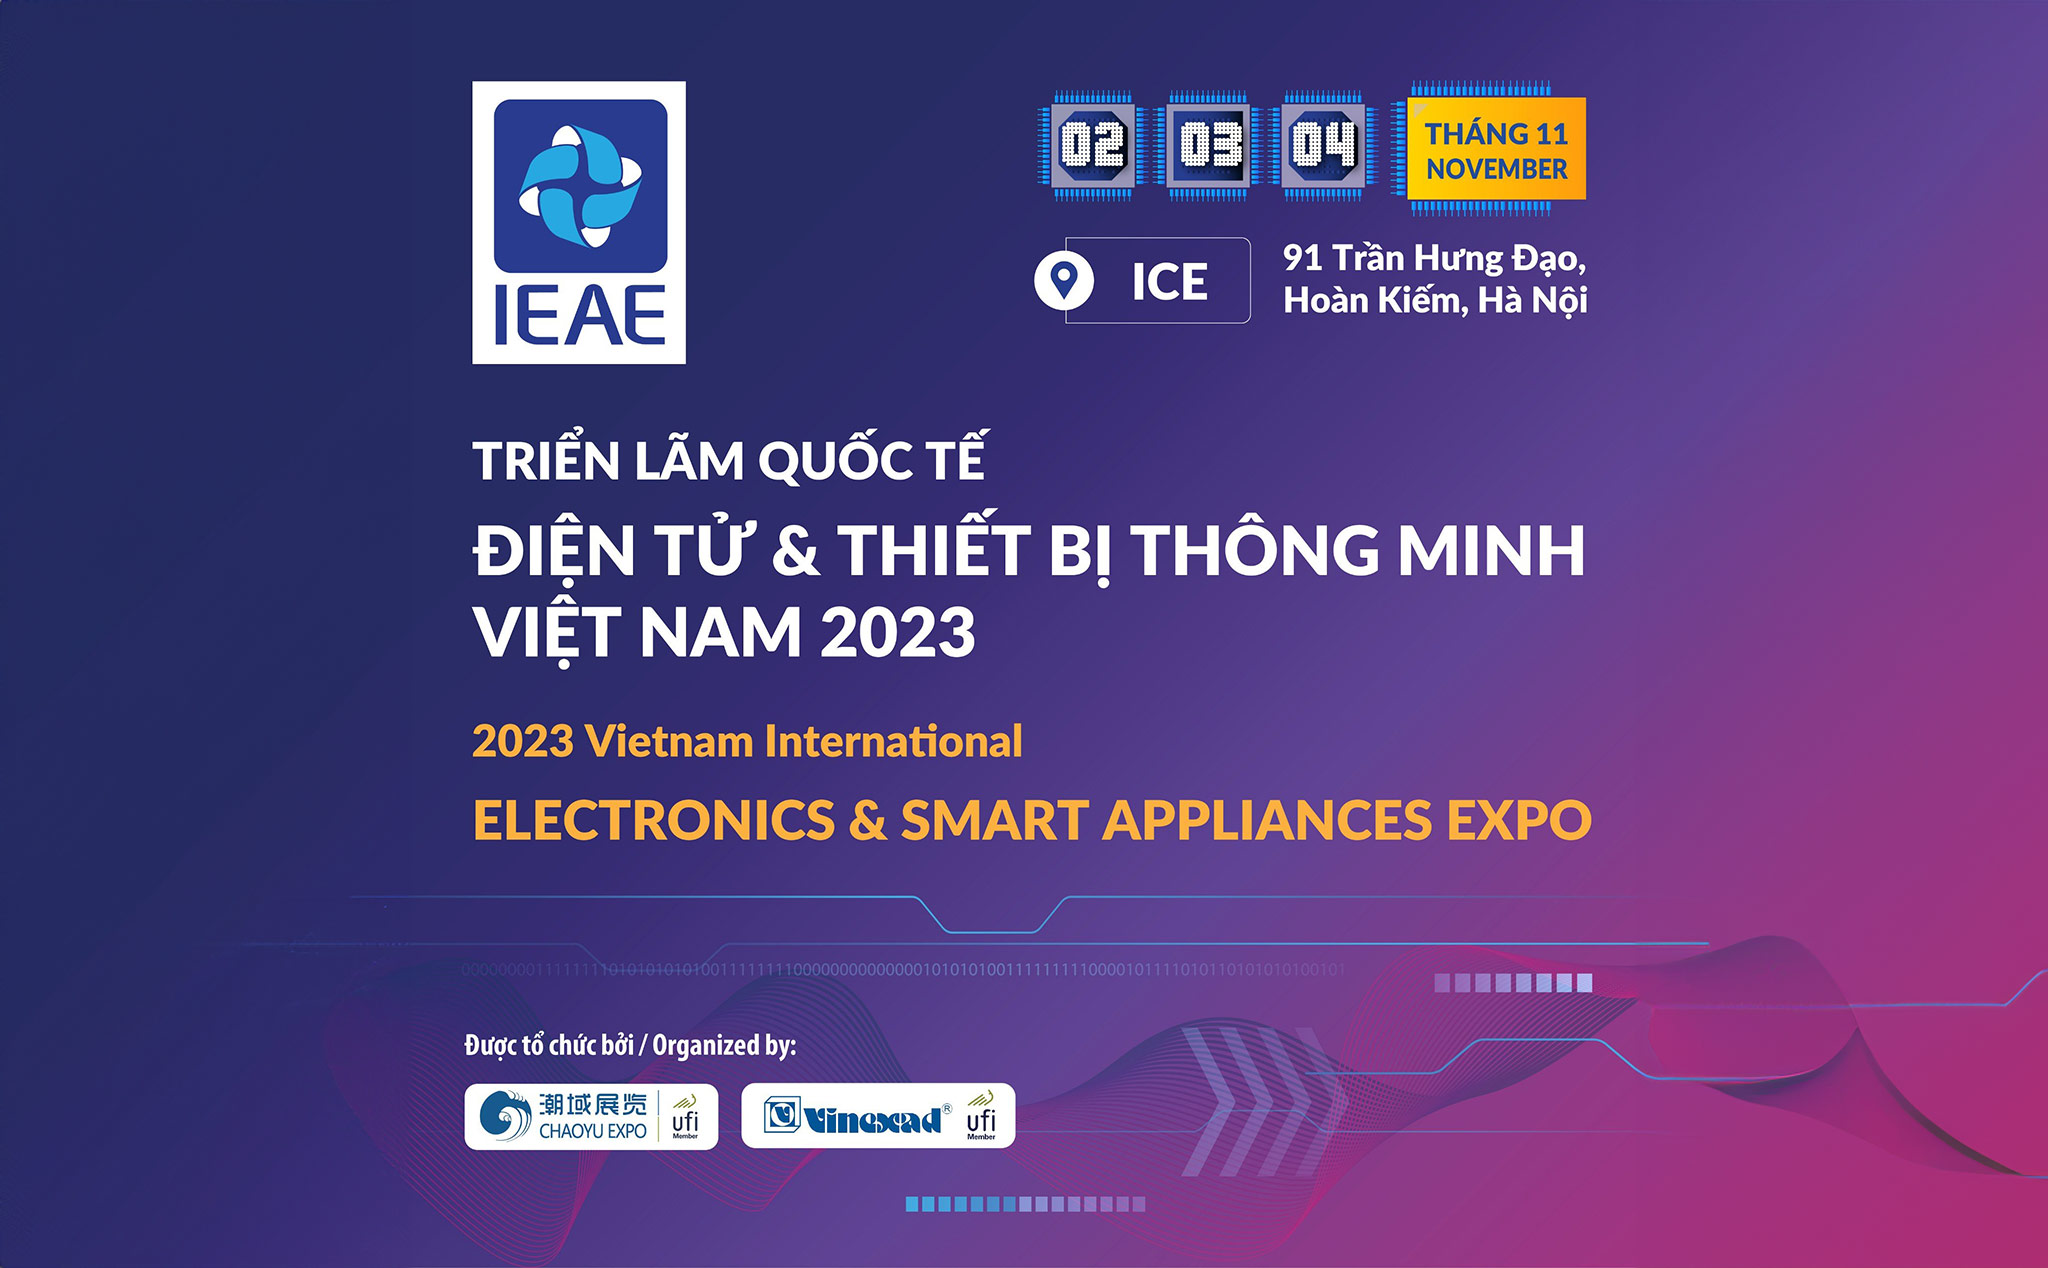 Triển lãm Quốc tế Điện tử và Thiết bị Thông minh Việt Nam IEAE diễn ra tại Hà Nội từ ngày 2-4/11